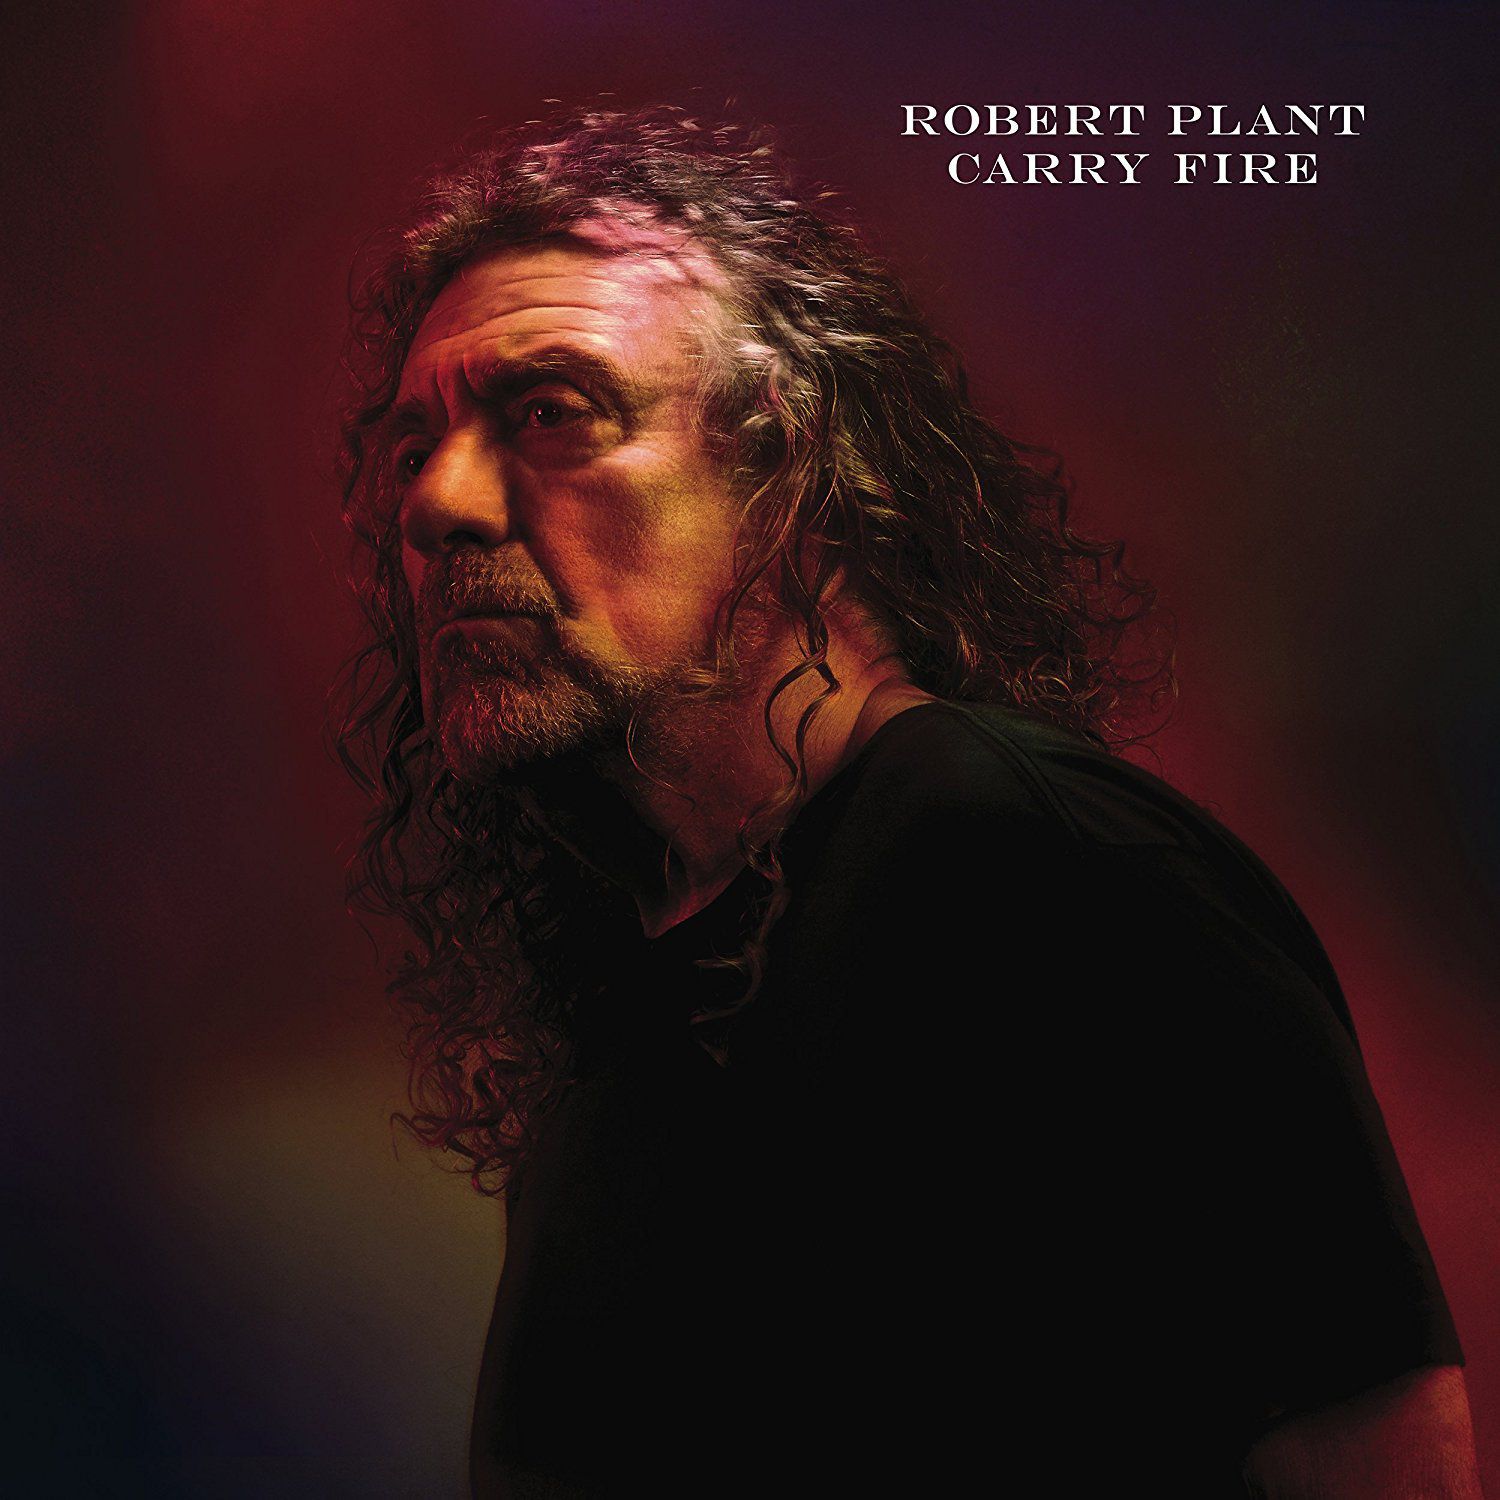 robert plant carry fire album stream listen Robert Plant unveils new solo album, Carry Fire: Stream